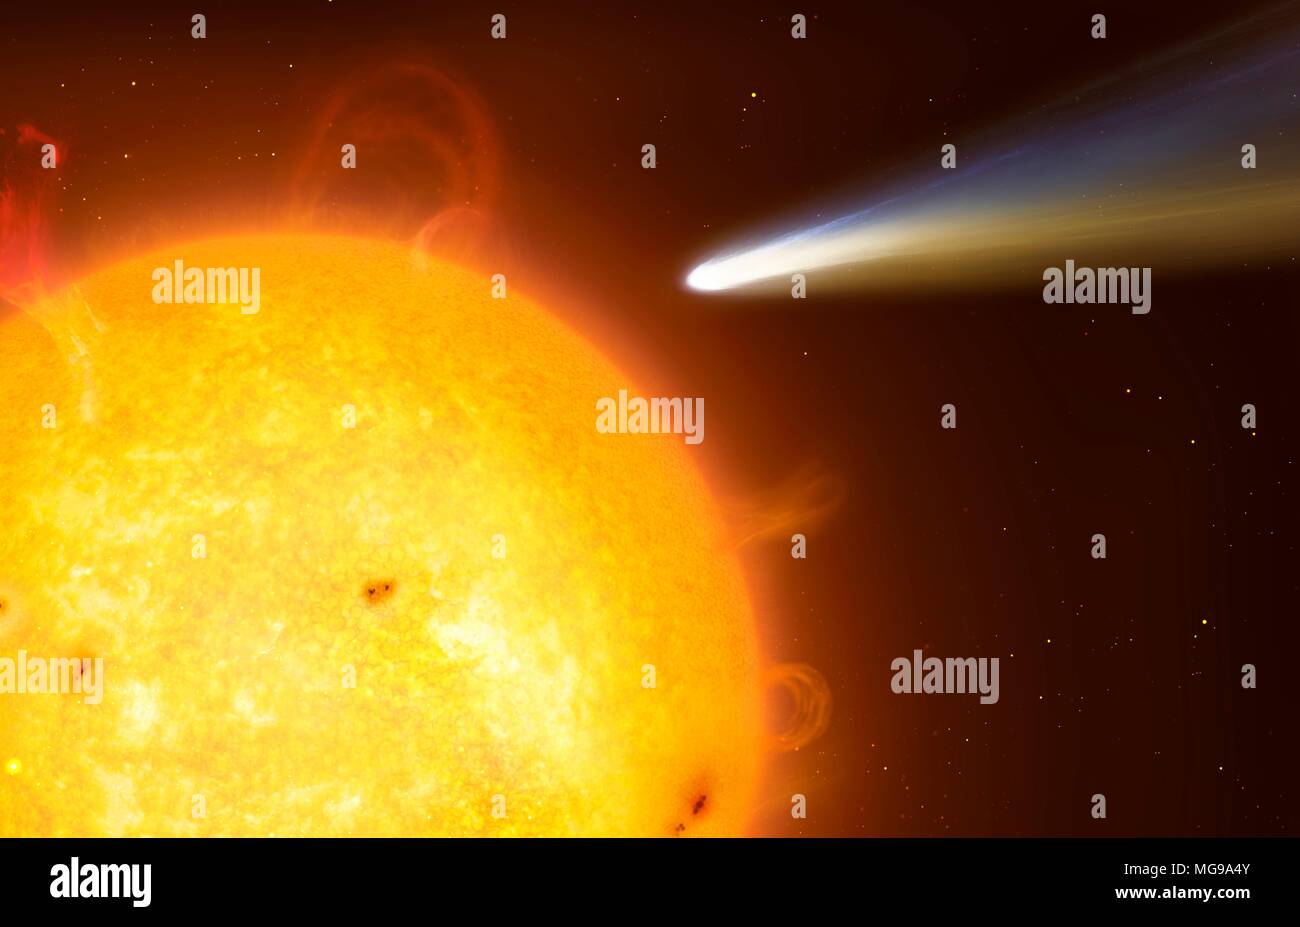 Illustrazione di una cometa sungrazing. Queste sono le comete che passano molto vicino al Sole a al perielio. Talvolta essi possono gonna al di sopra del photosphere a distanze di qualche migliaio di chilometri - il semplice del diametro di un piccolo pianeta. Di tanto in tanto le comete sono completamente evaporato in questo processo, ma alcuni possono durare diversi passaggi prima di cadere nel sole o disintegrazione a causa delle forze di marea. Foto Stock